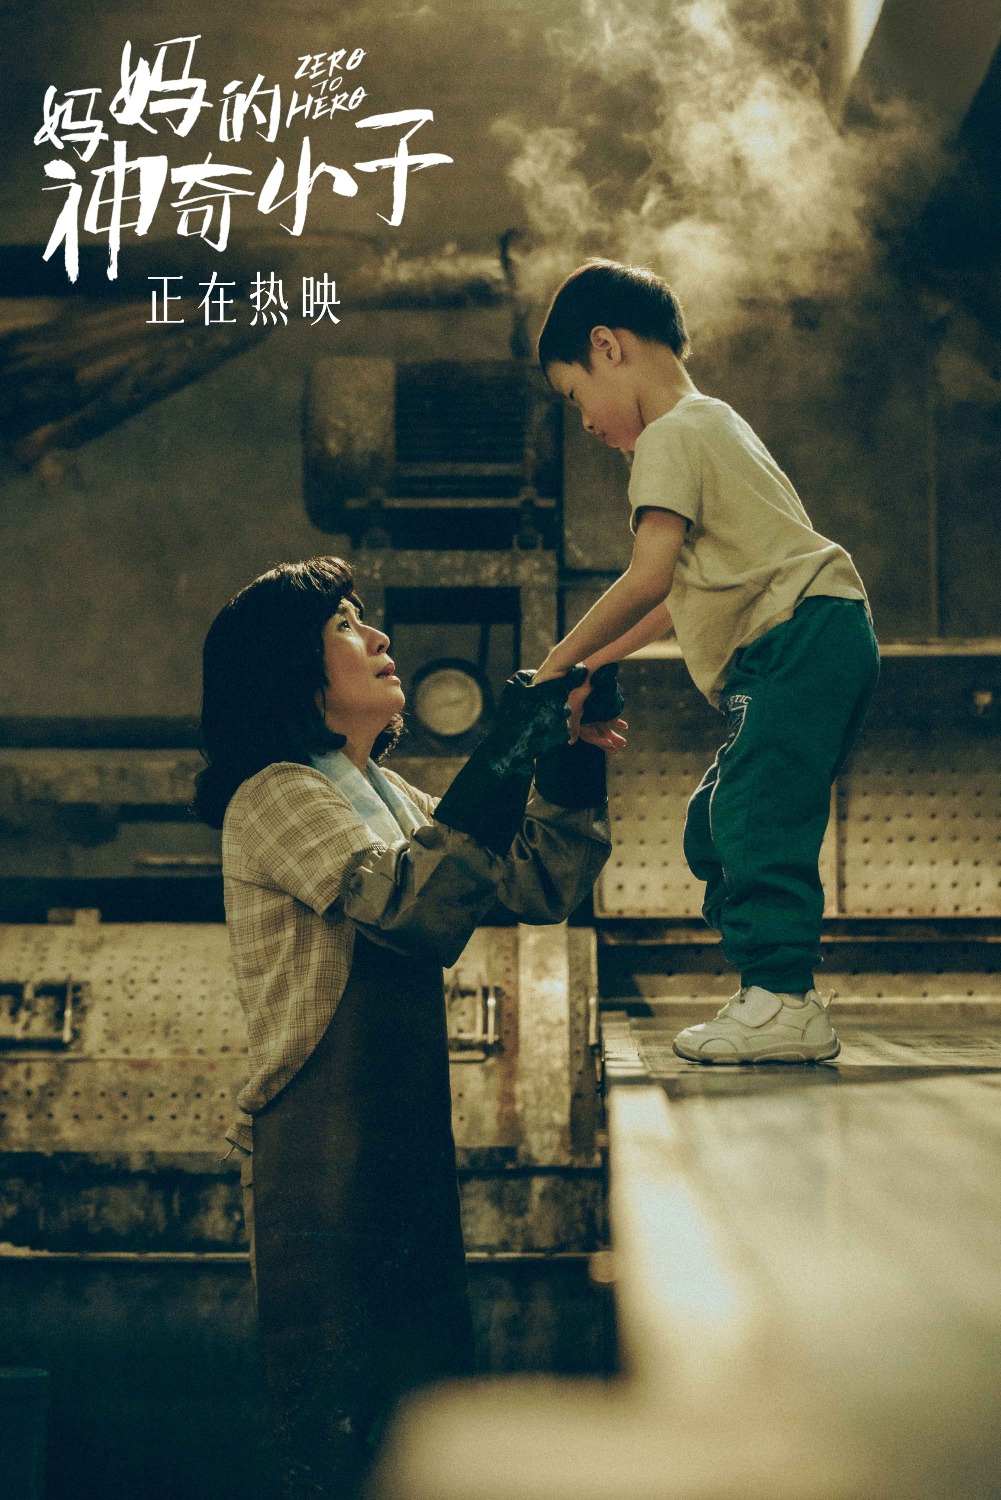 当代中国-影视时尚-妈妈的神奇小子-苏桦伟4